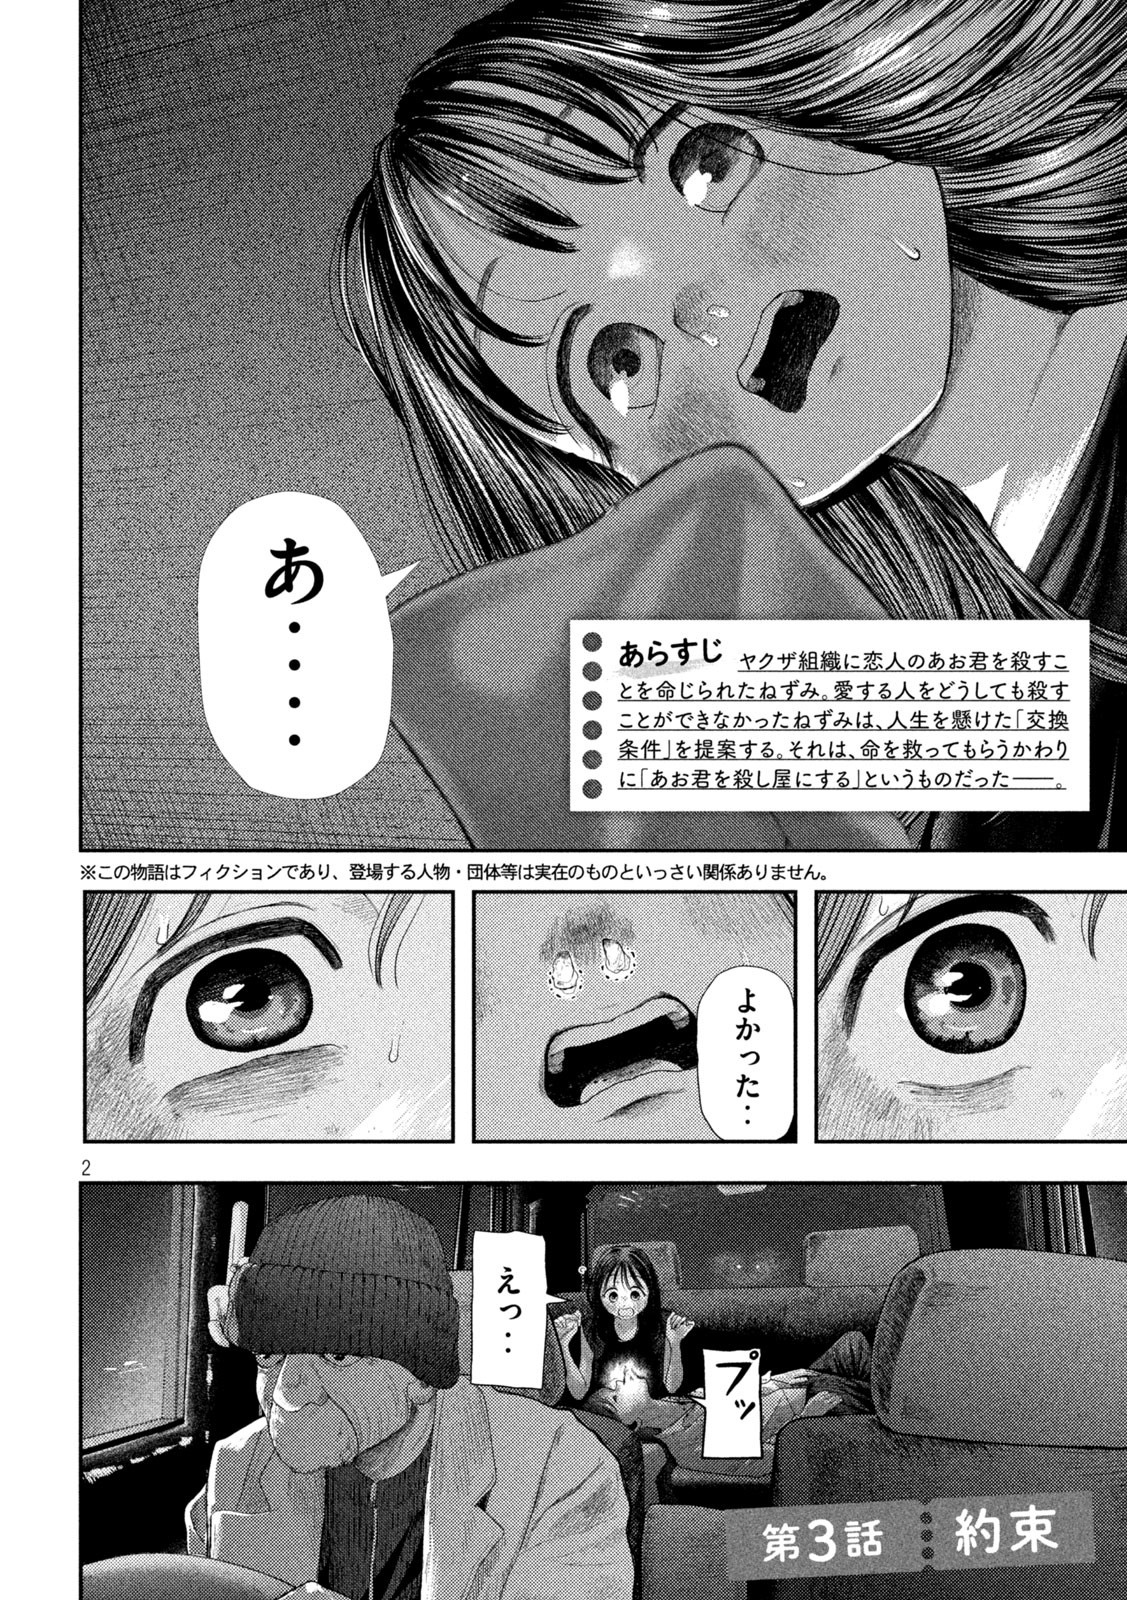 Nezumi no Koi - Chapter 3 - Page 2